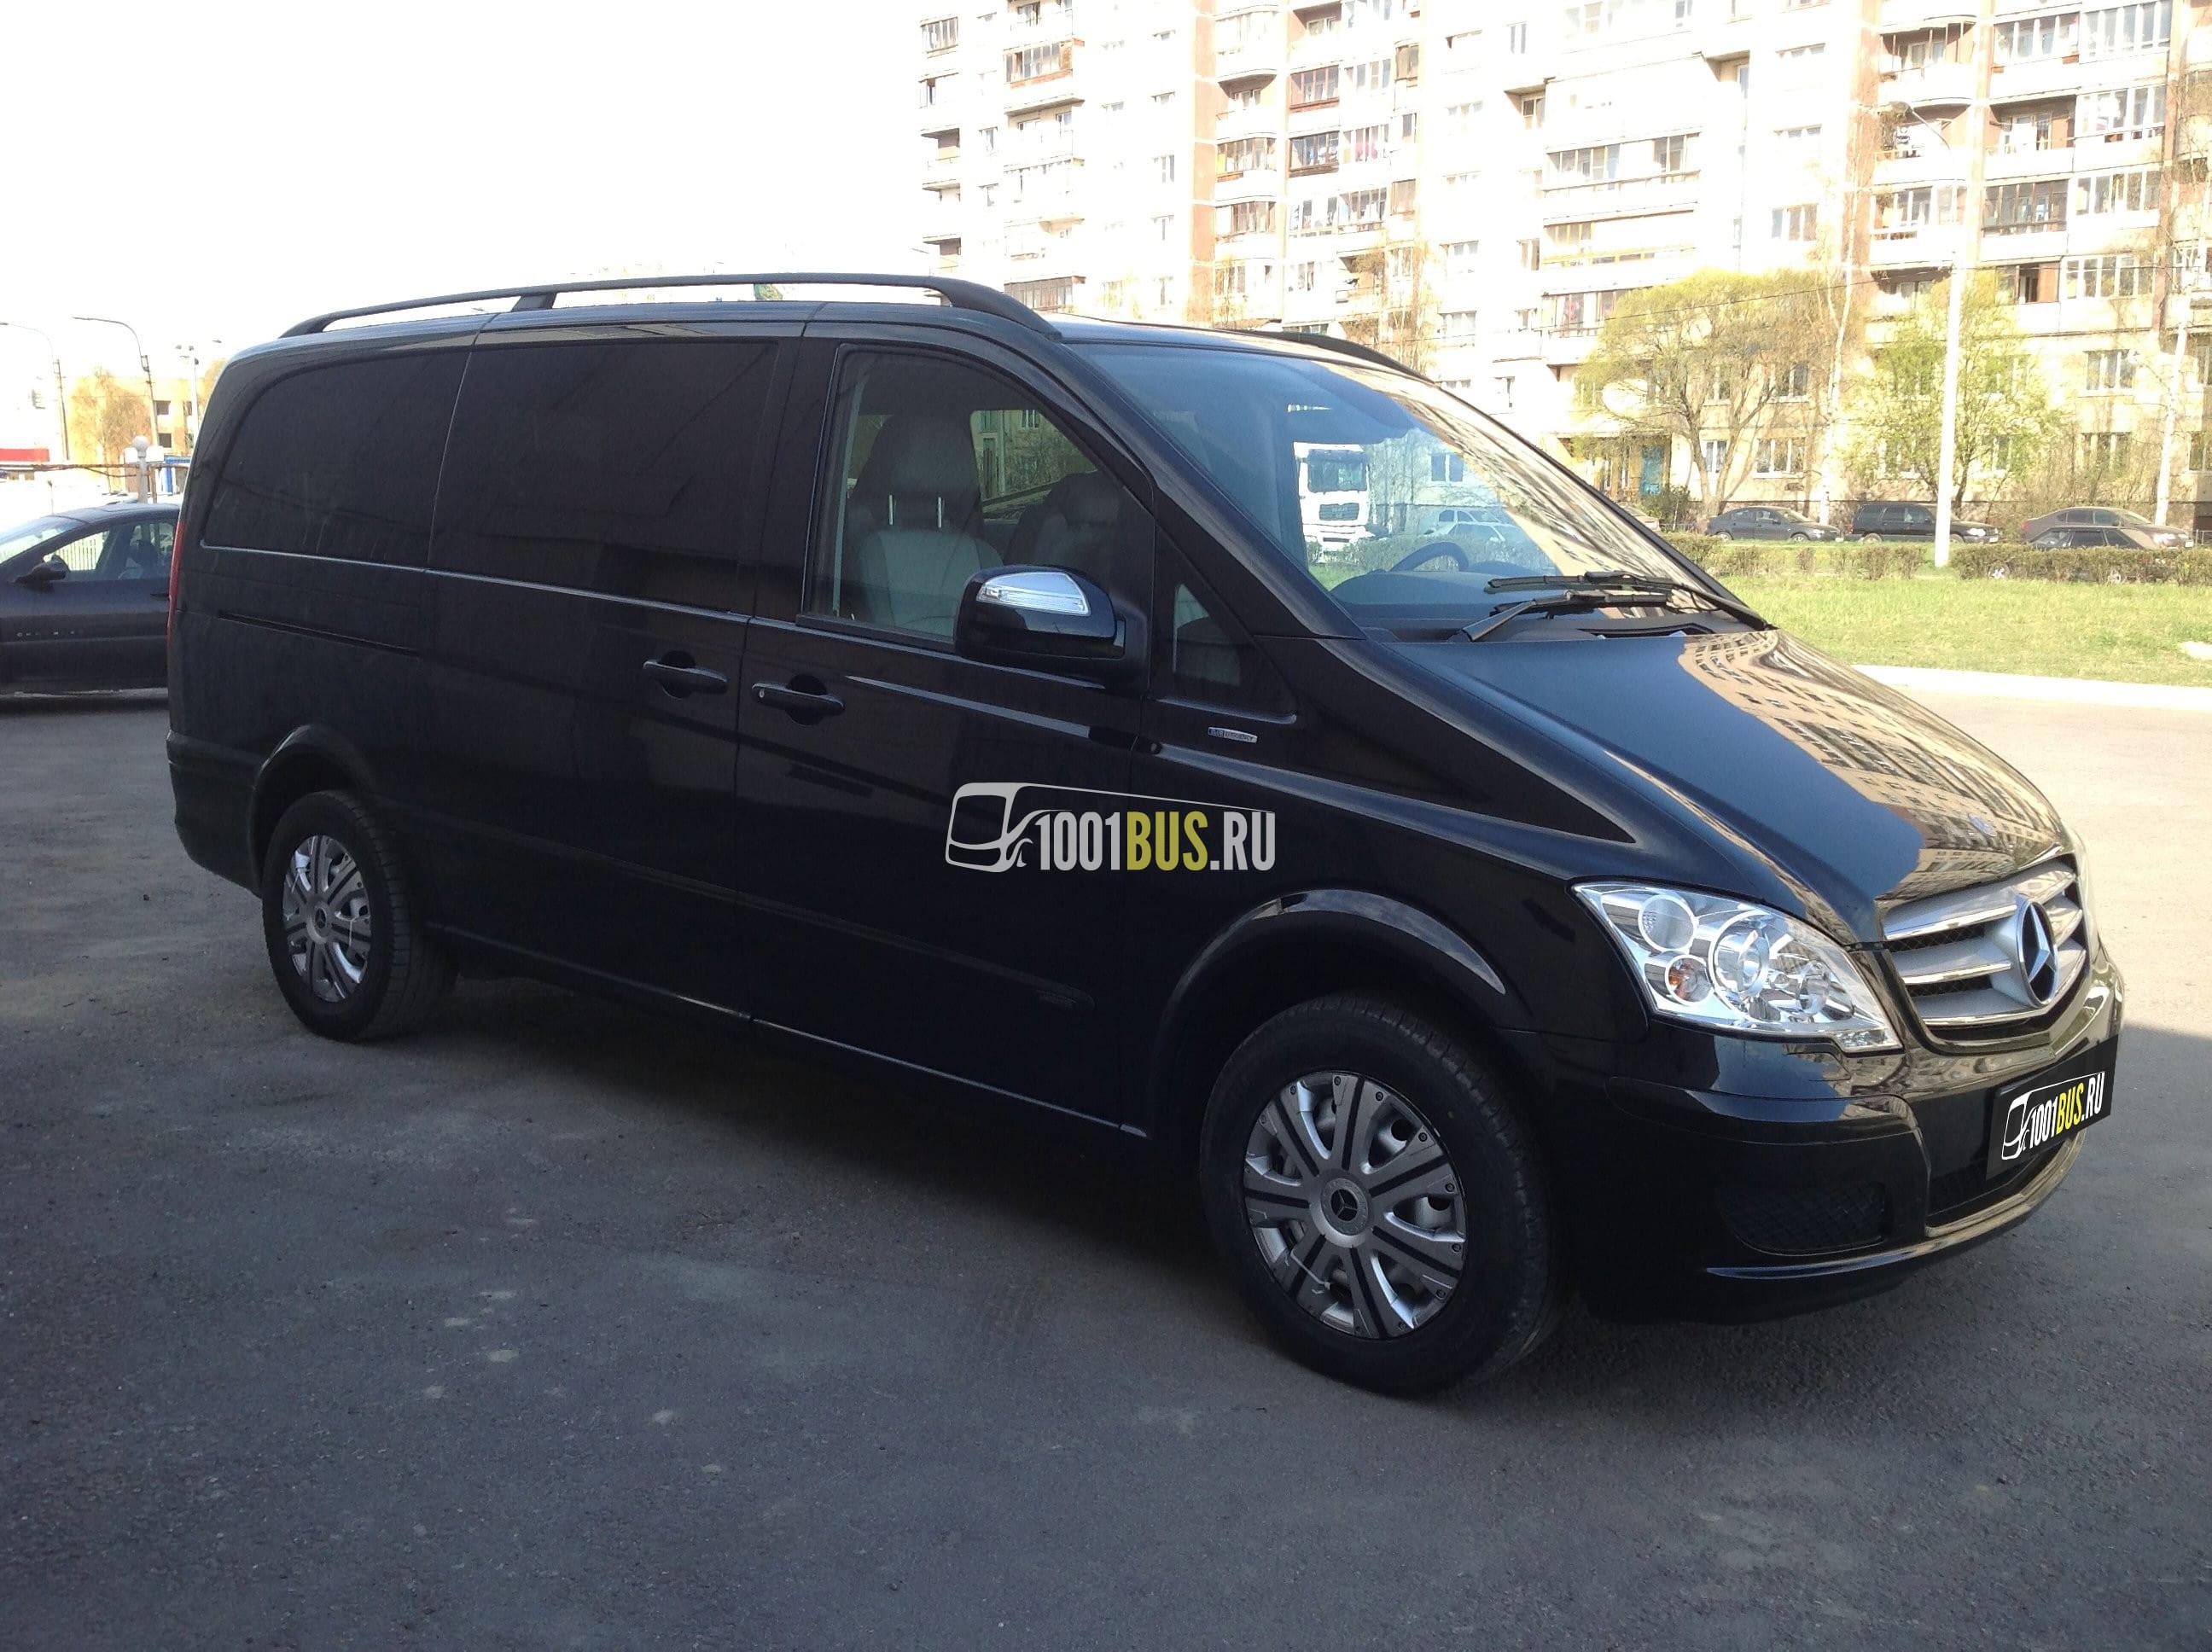 Минивэн Mercedes-Benz Viano - прокат с водителем в Москве и области -  компания 1001 bus